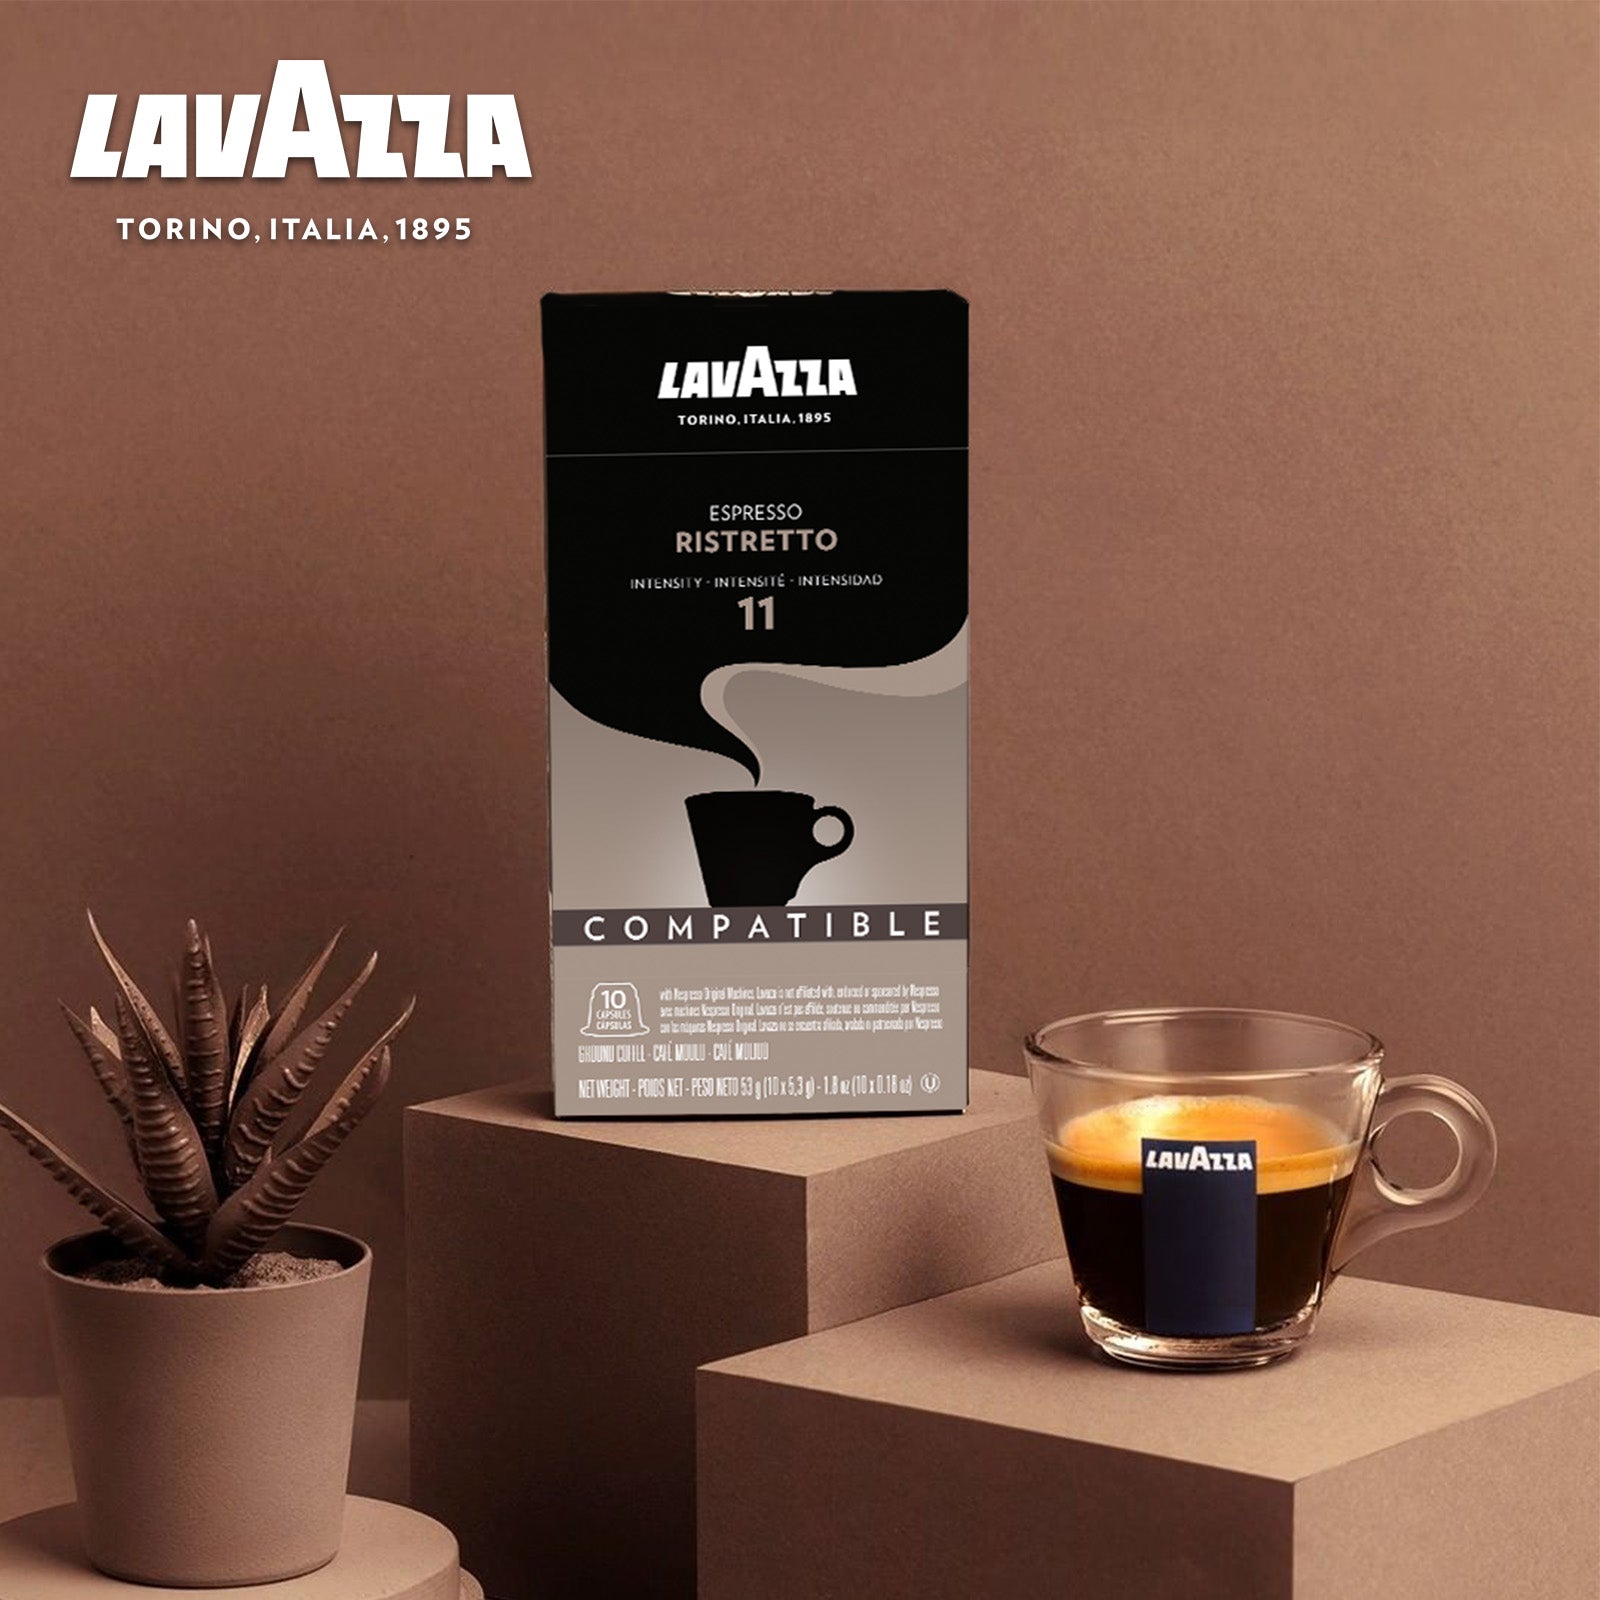 Lavazza Espresso Vigoroso, 5.5 G X 10 Nos Nespresso Compatible